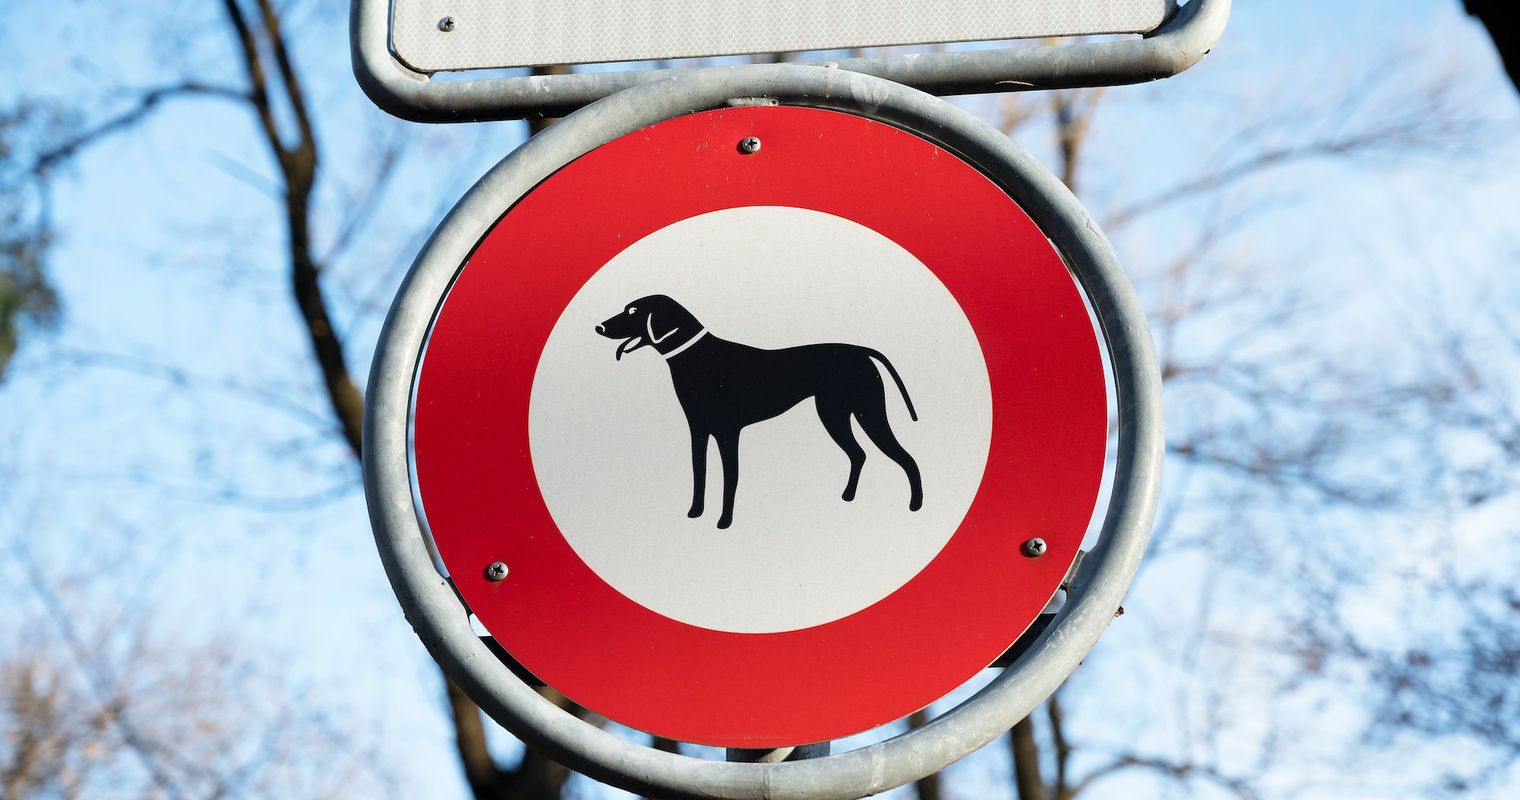 Baar plant Hundeverbot auf beliebtem Spazierweg